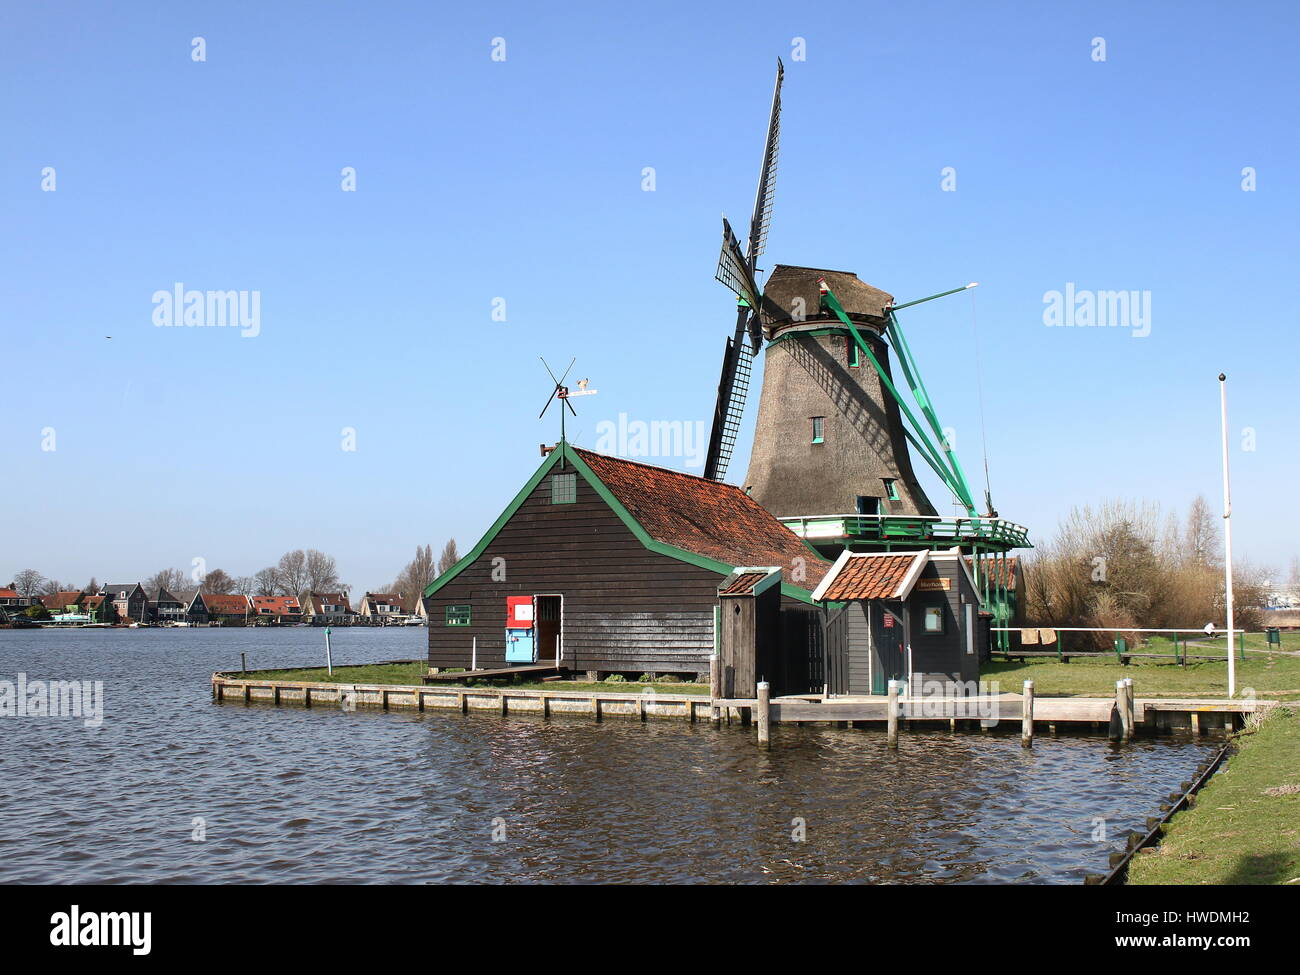 Late17th century Oil mill De Bonte Hen (The Spotted Hen)  at Zaanse Schans, Zaandam / Zaandijk, Netherlands Stock Photo